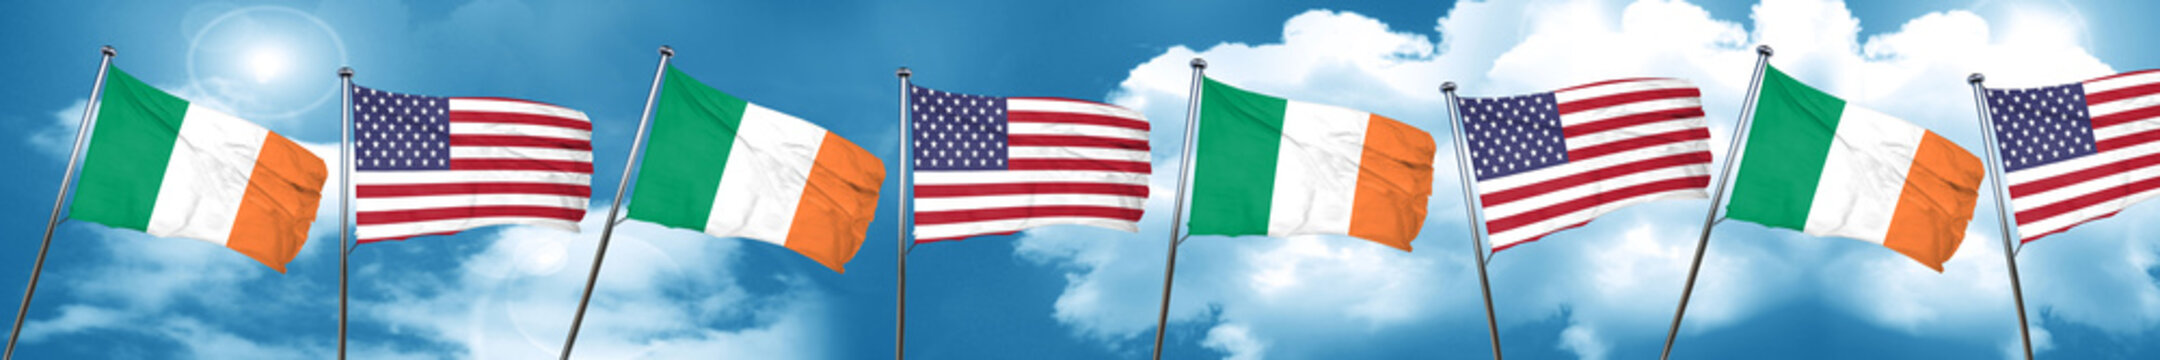 Ireland flag, 3D rendering